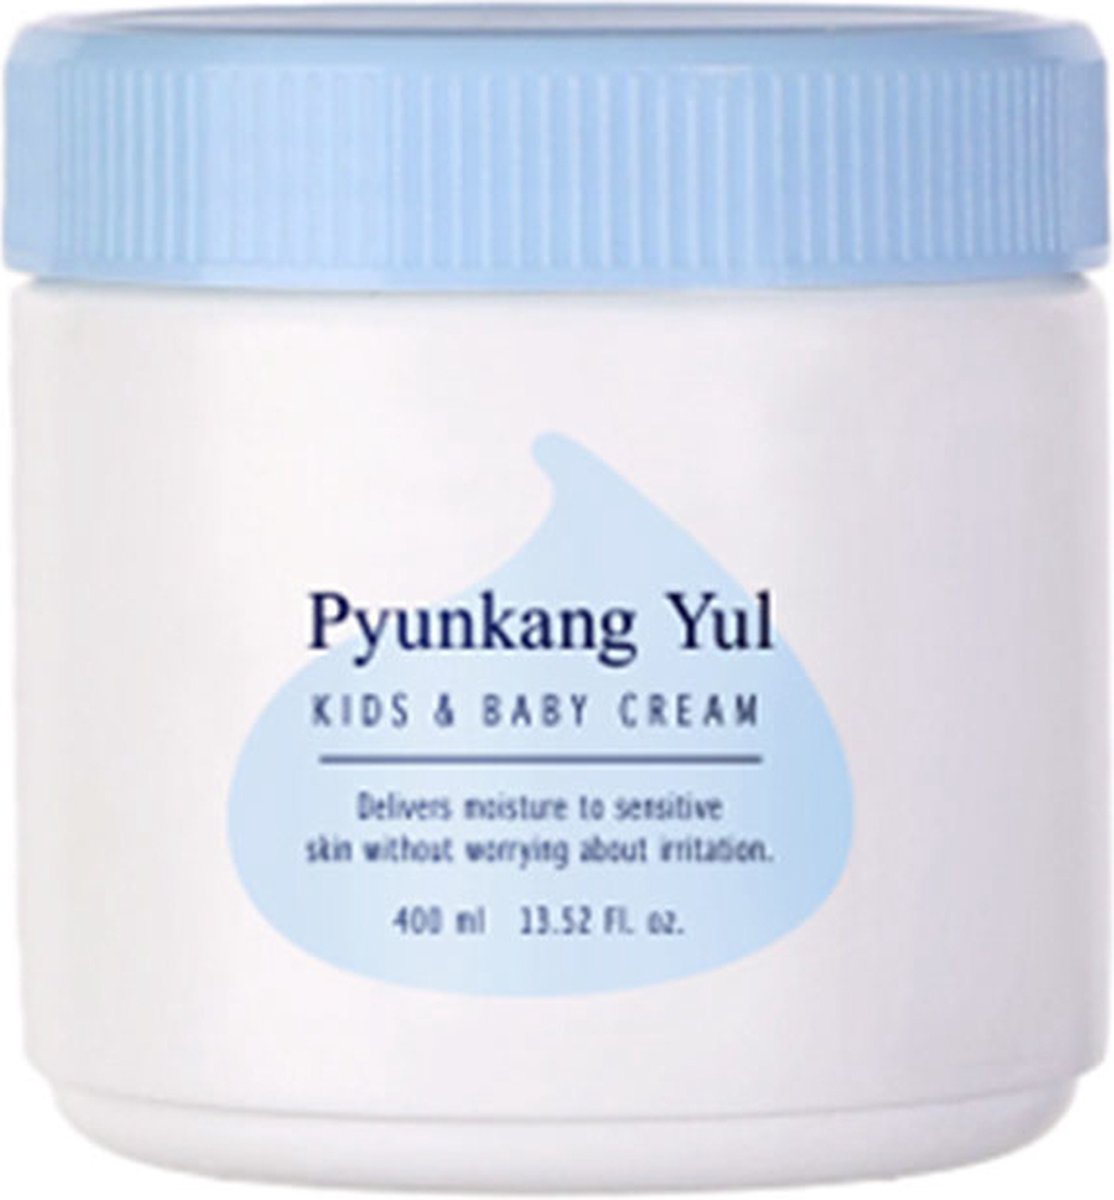 Pyunkang Yul Kids & Baby Cream 400 ml